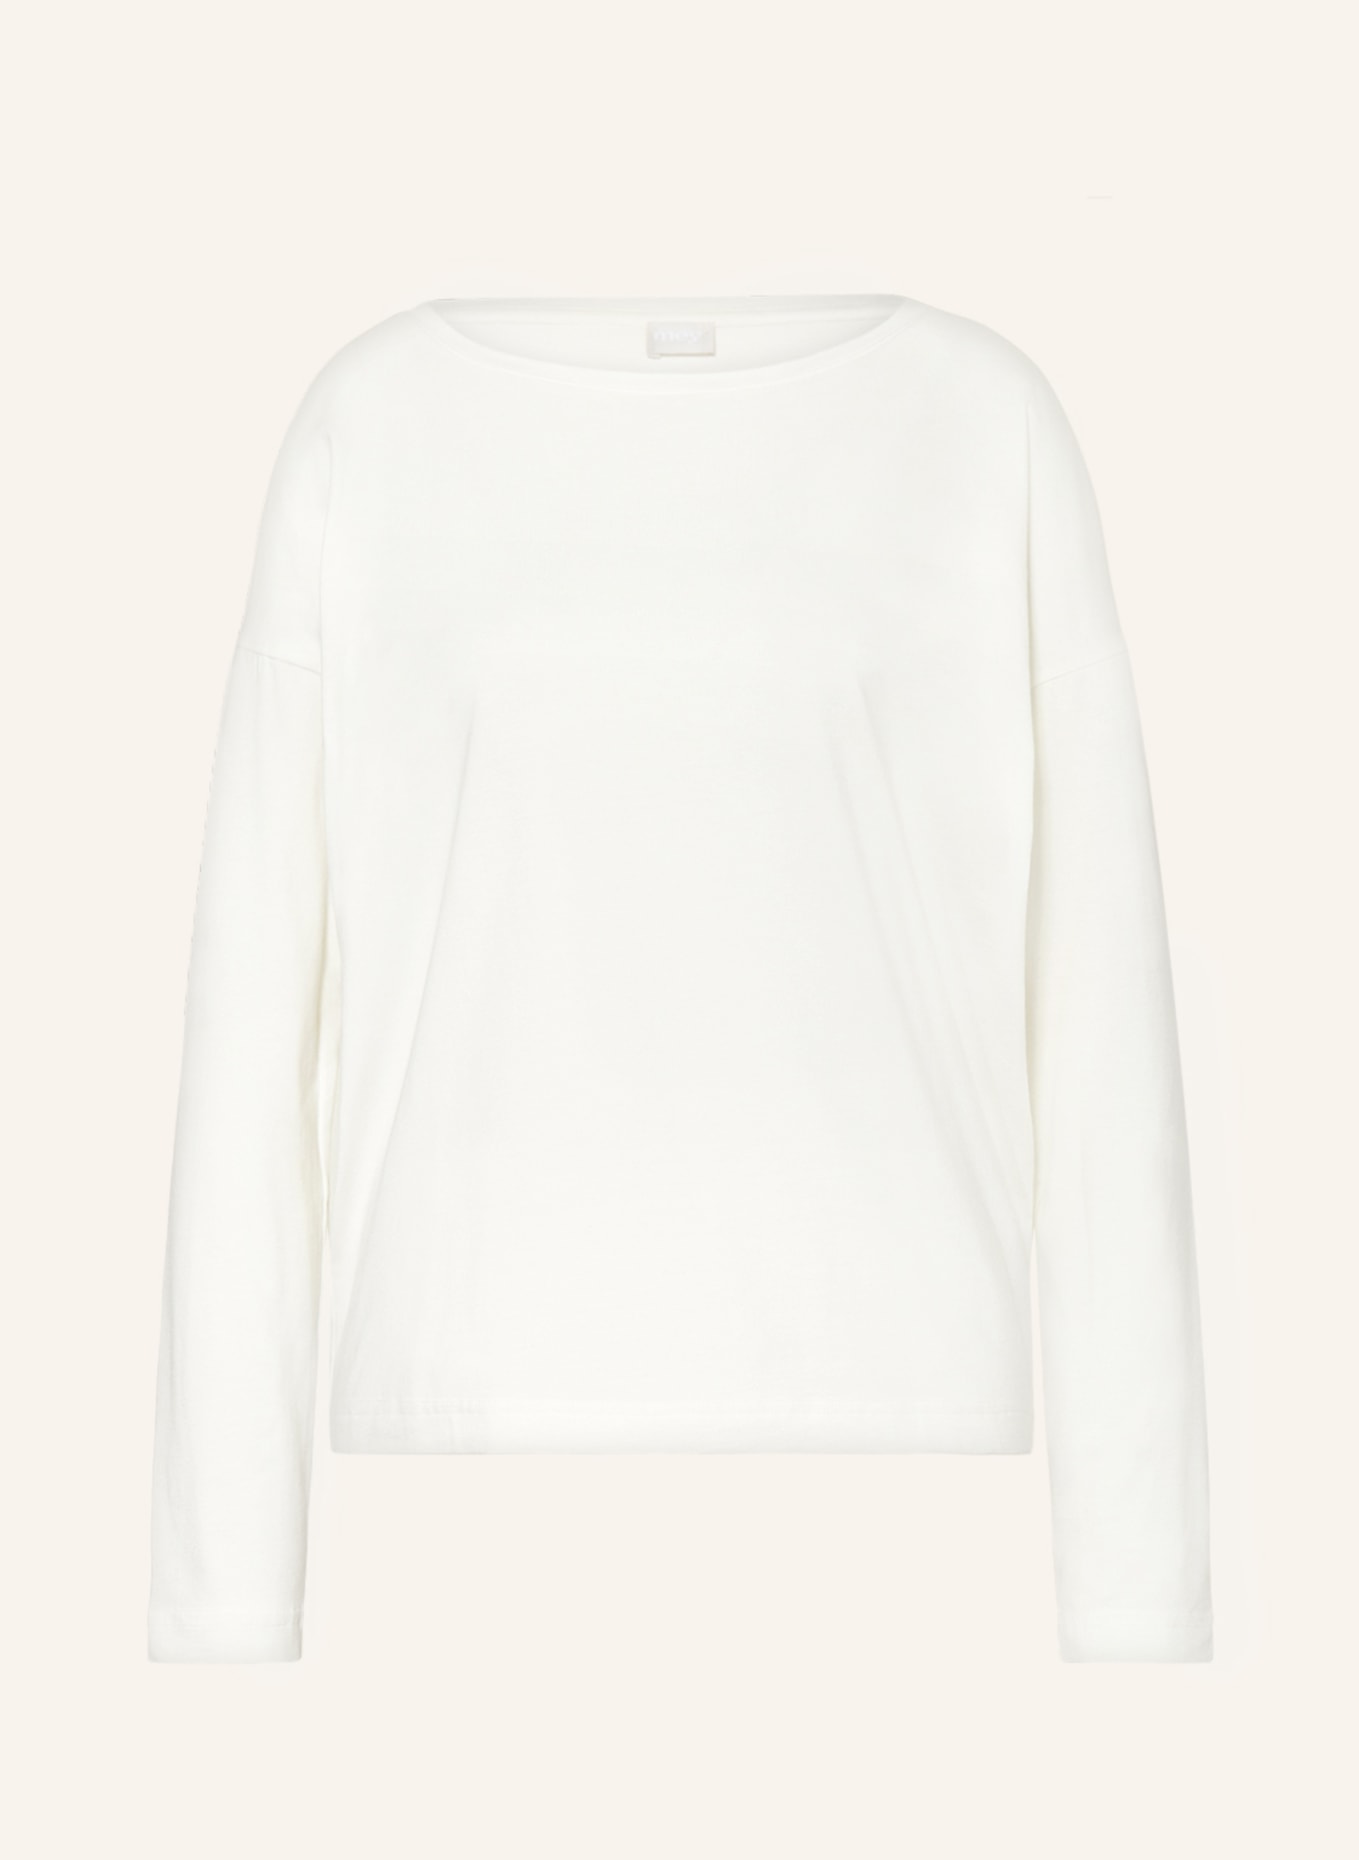 mey Pajama shirt series TESSIE, Color: WHITE (Image 1)